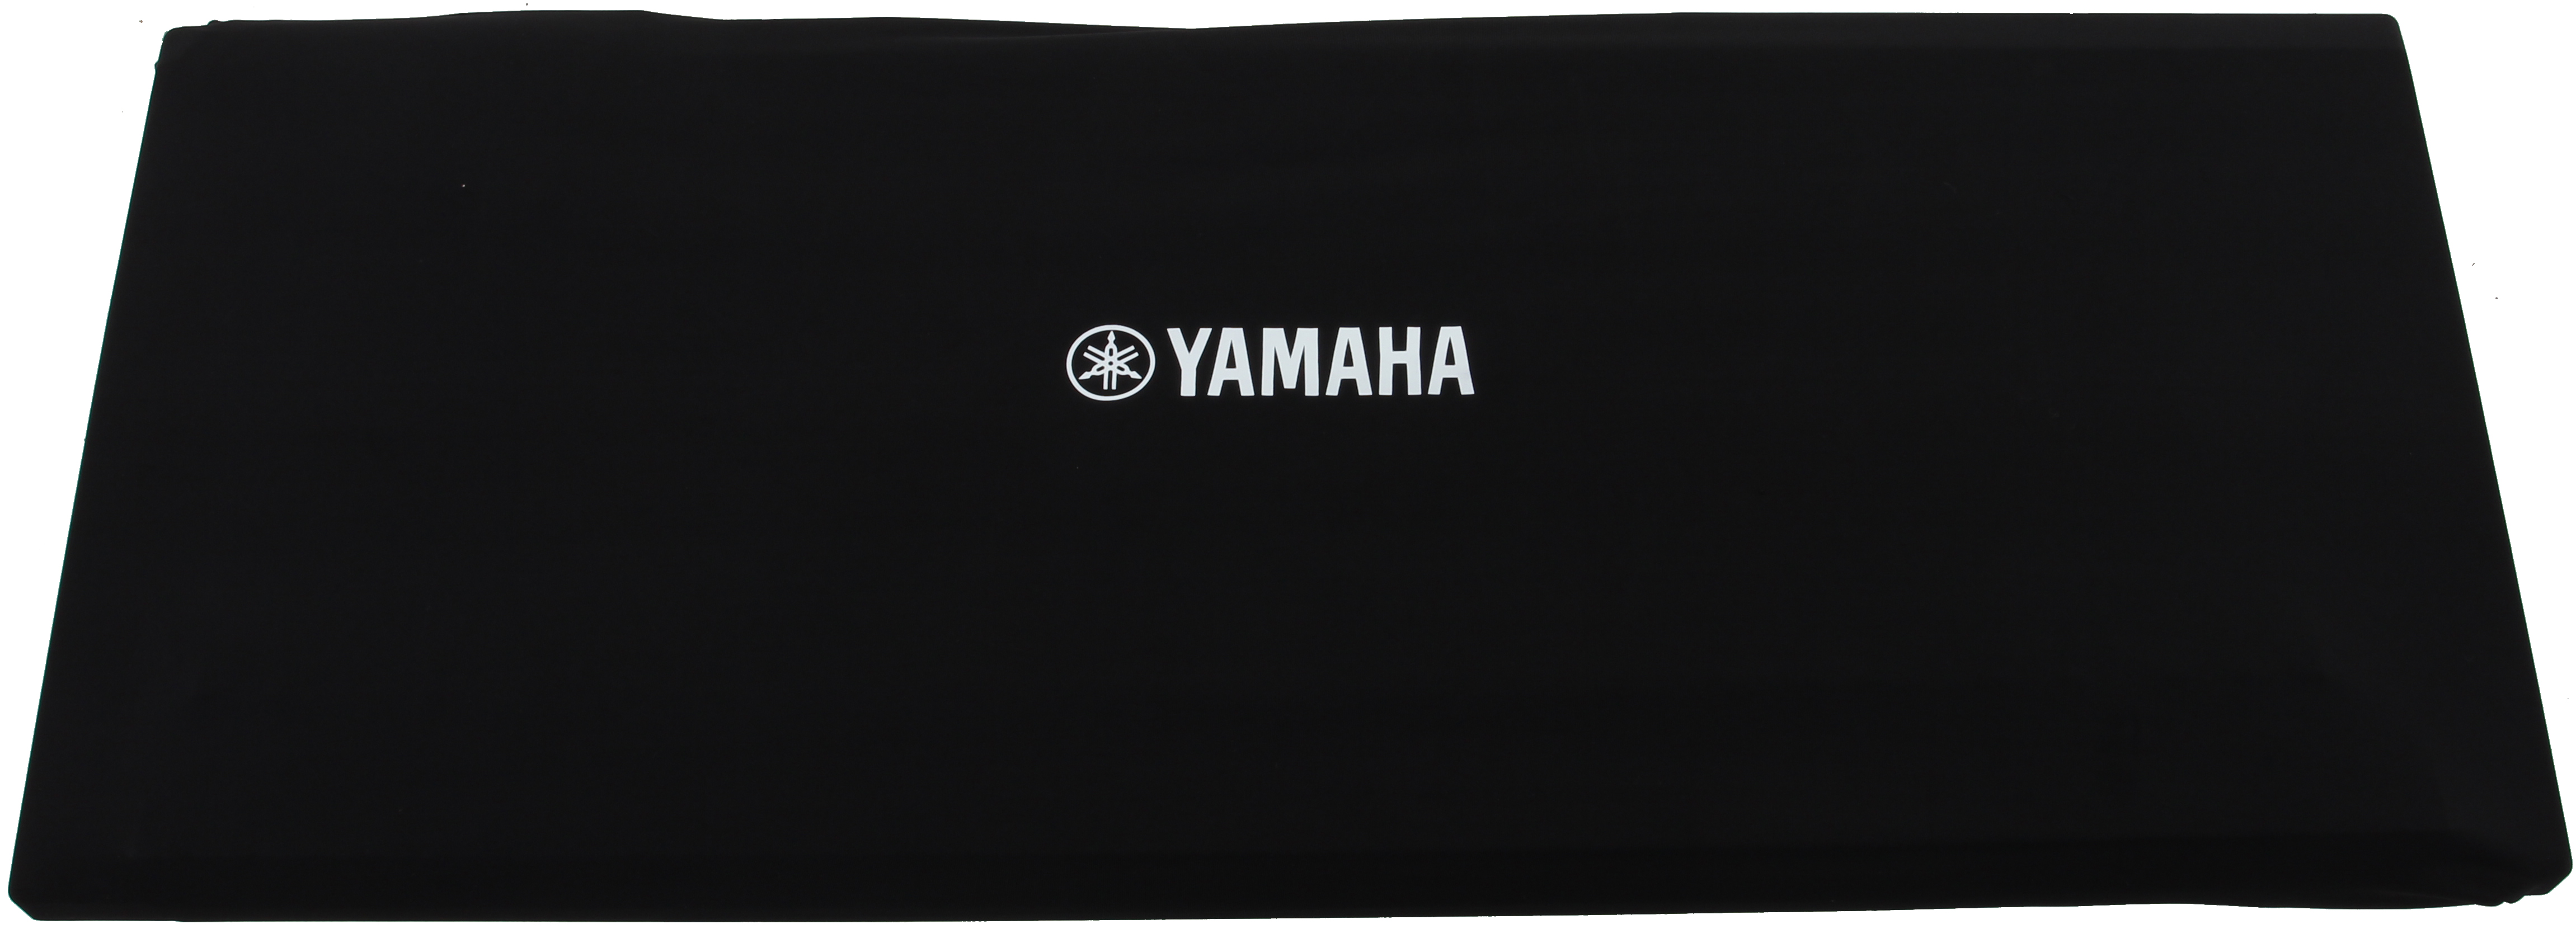 Yamaha DC18A Dust Cover 92 x 29 x 10